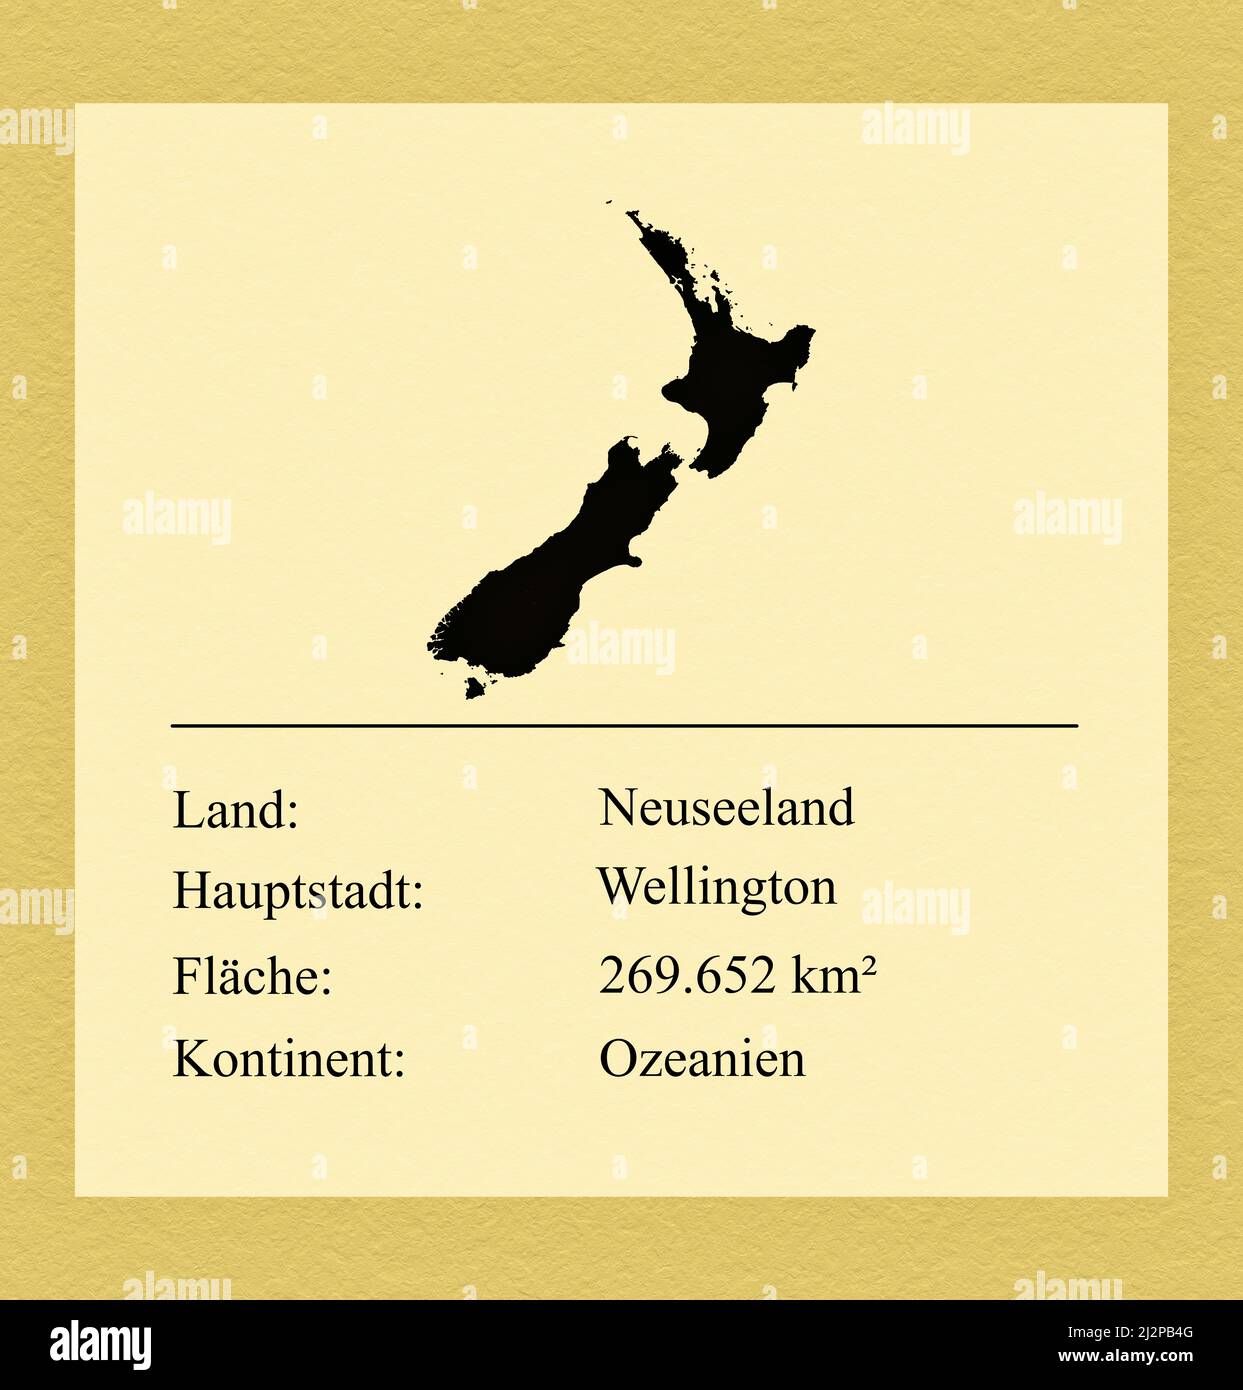 Umrisse des Landes Neuseeland, darunter ein kleiner Steckbrief mit Ländernamen, Hauptstadt, Fläche und Kontinent Foto Stock